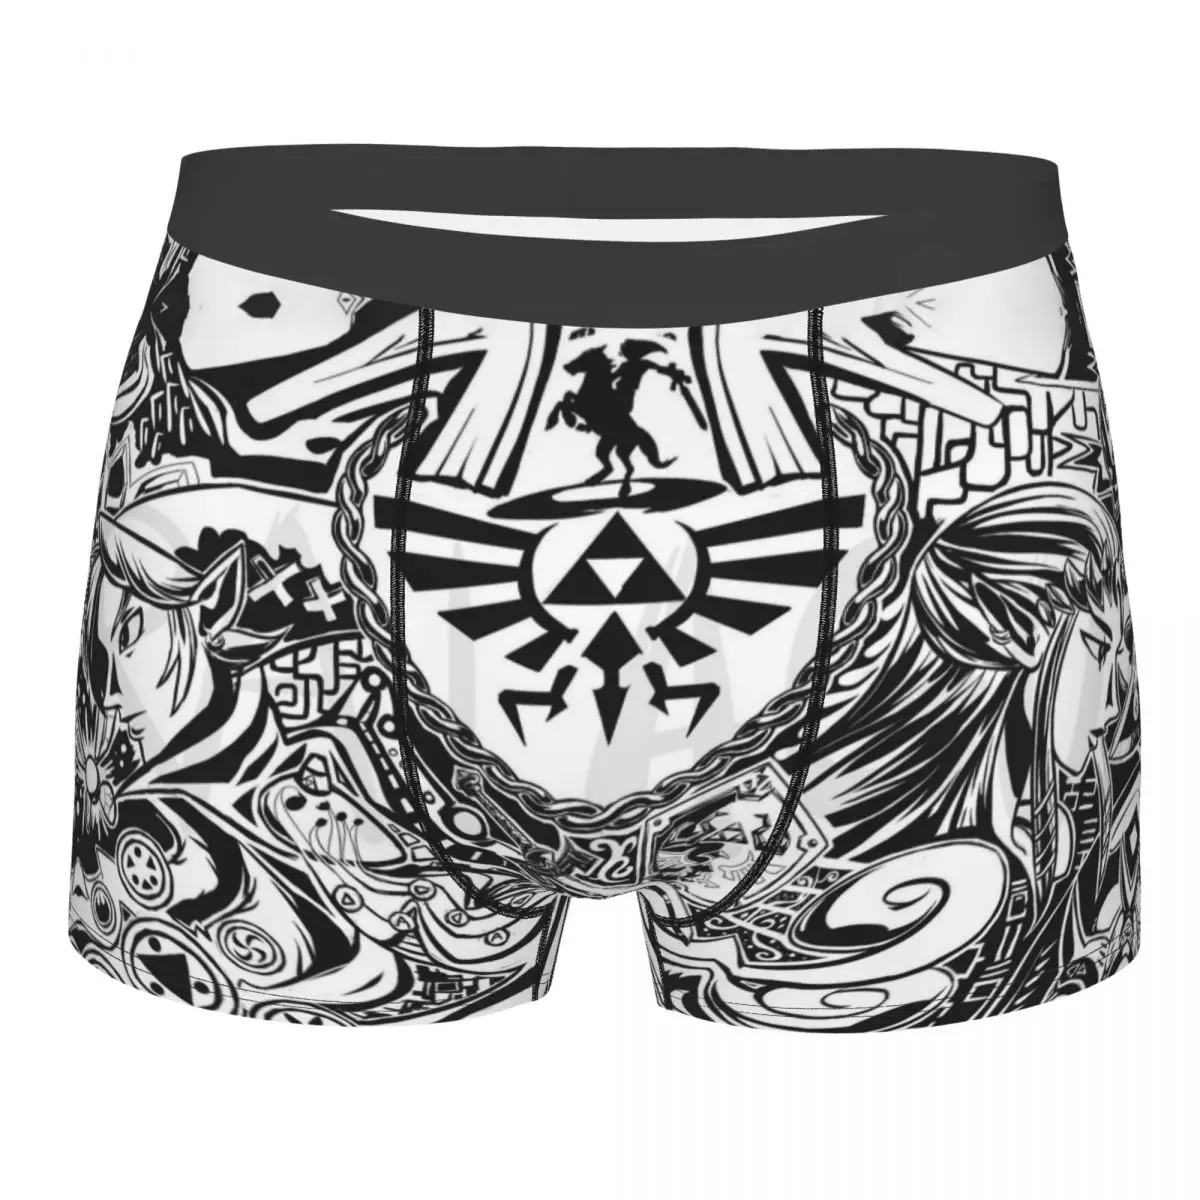 Koel De Legende Van Zeldas Boxer Shorts Slipje Man Onderbroek Comfortabele Onderbroek Ondergoed0